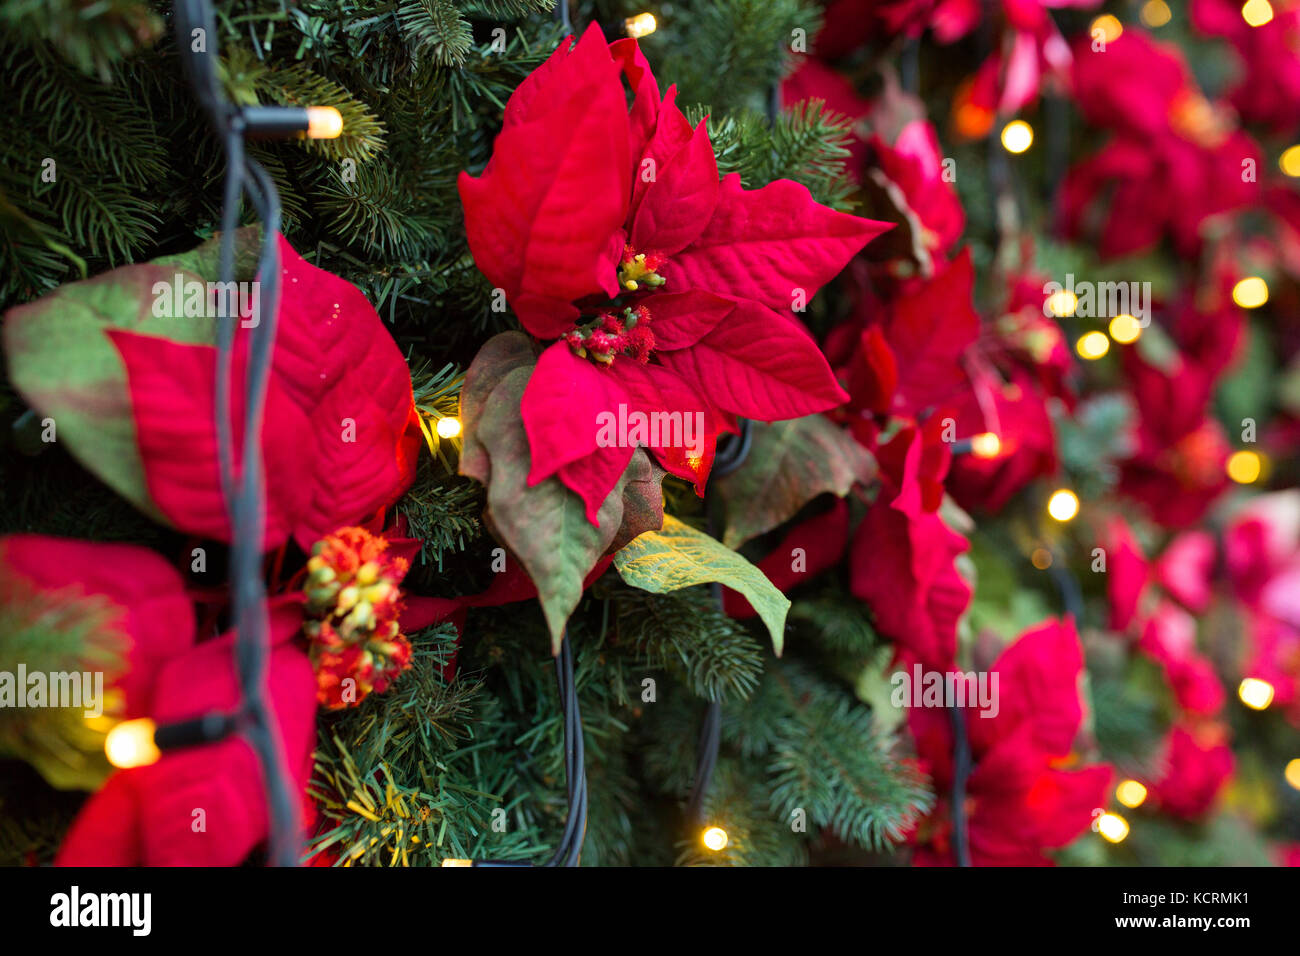 Close up de l'arbre de Noël avec des décorations florales Banque D'Images